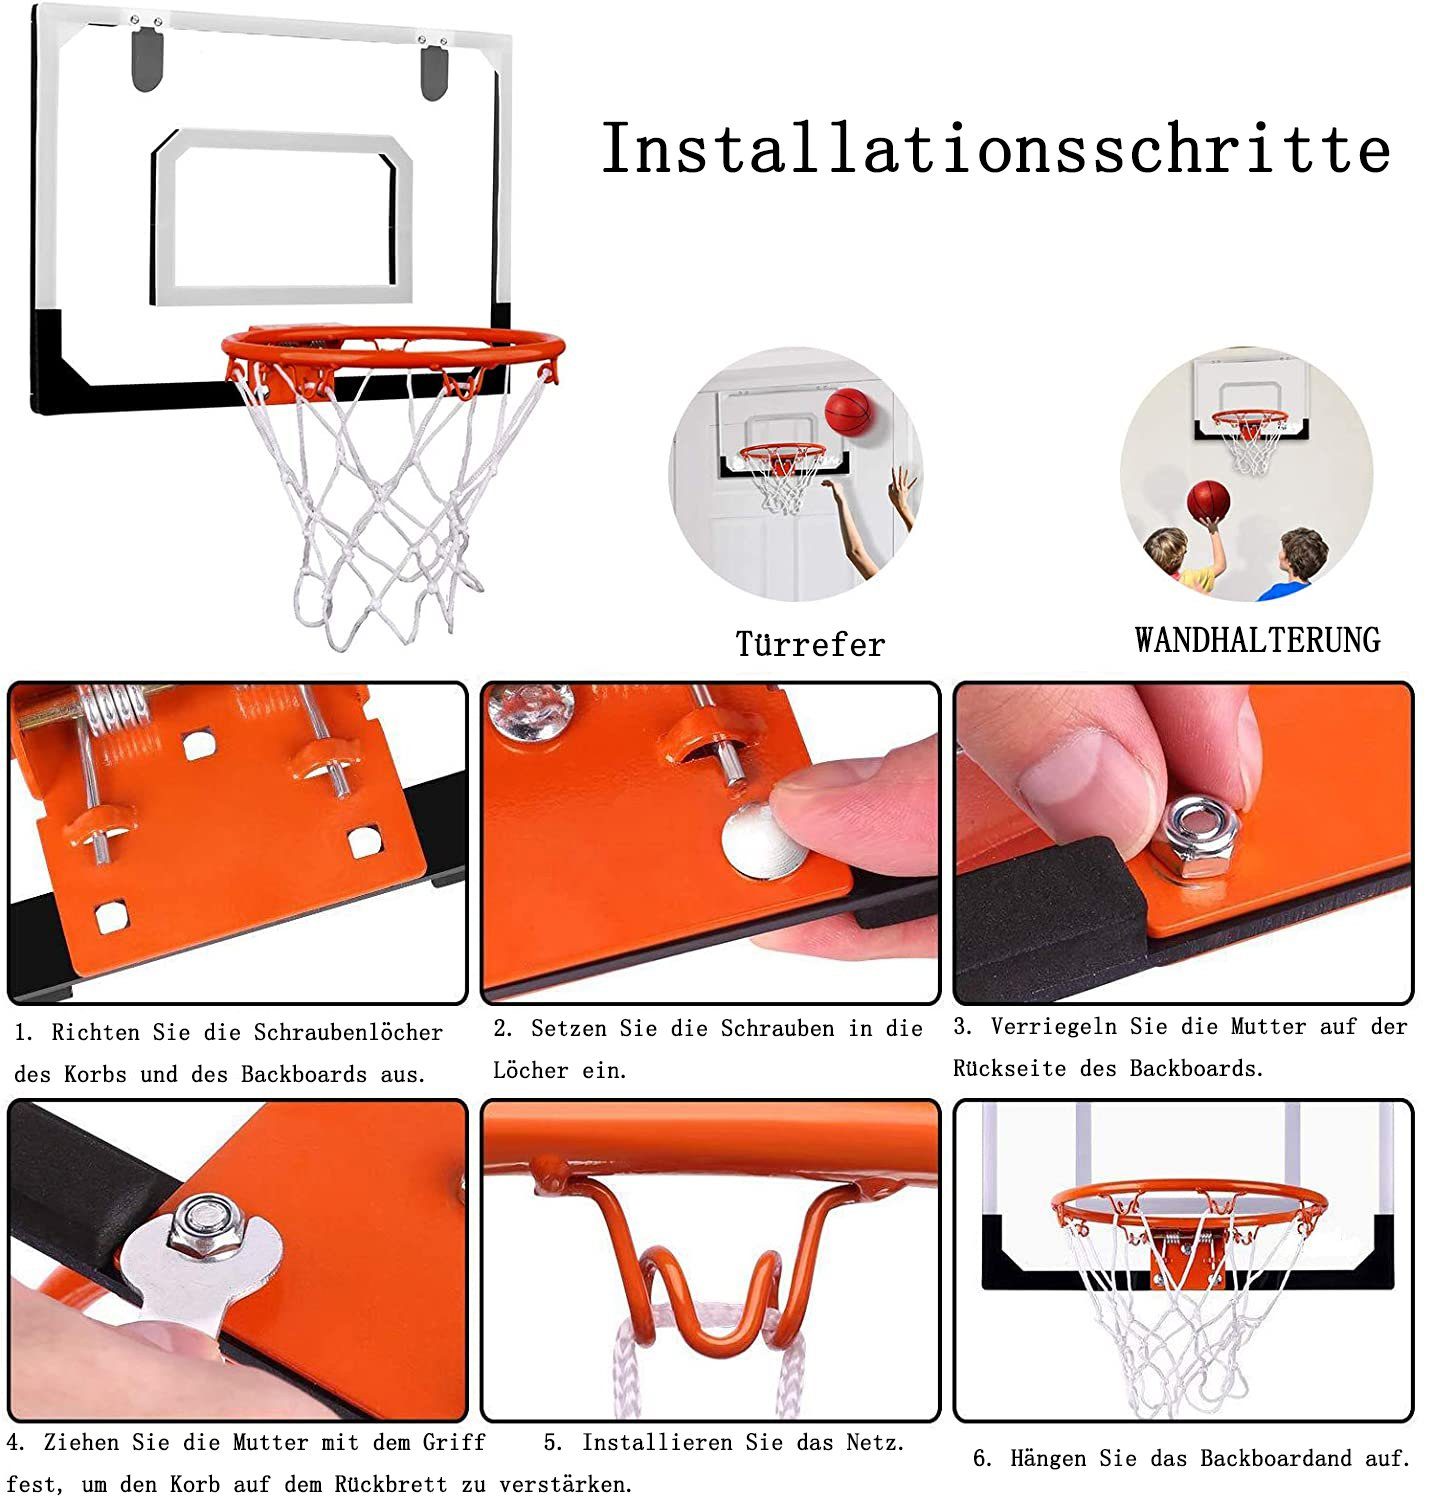 GelldG (2-St) Basketballkorb für Erwachsene Mini und für Basketballkorb Hängen Tür Kinder Zimmer